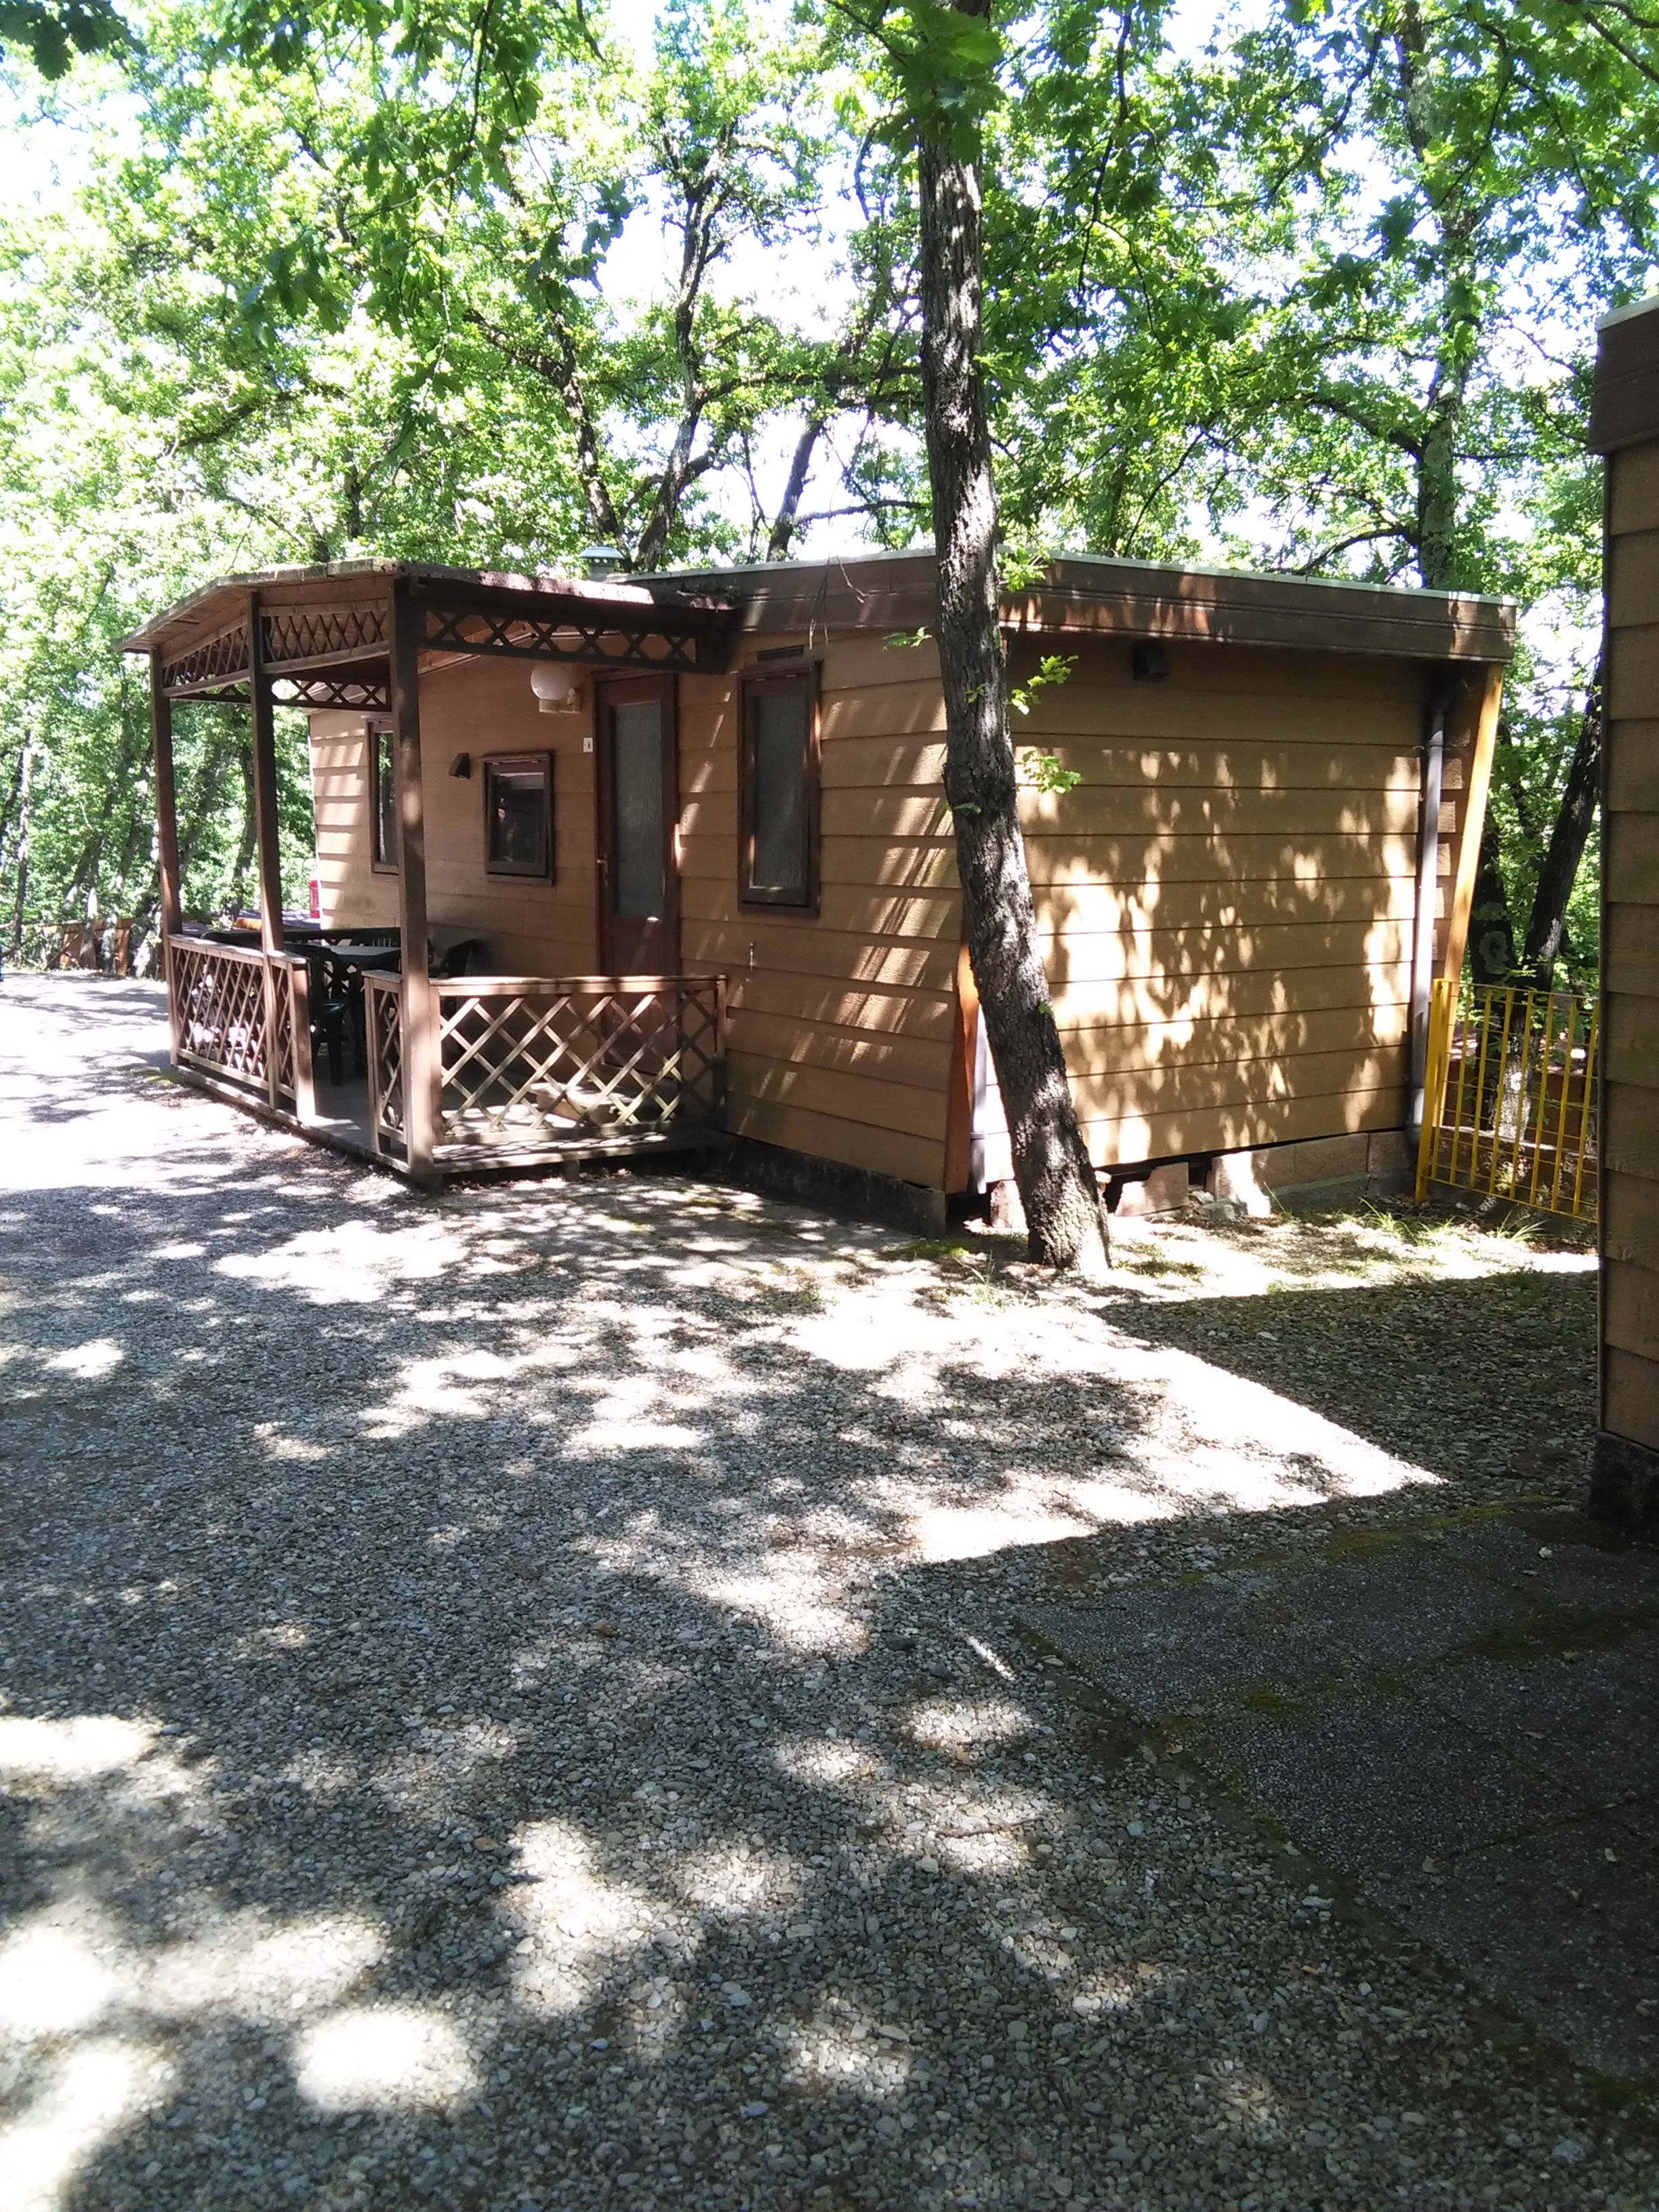 Alloggio - Casa Mobile Standard - Camping Village Internazionale Firenze